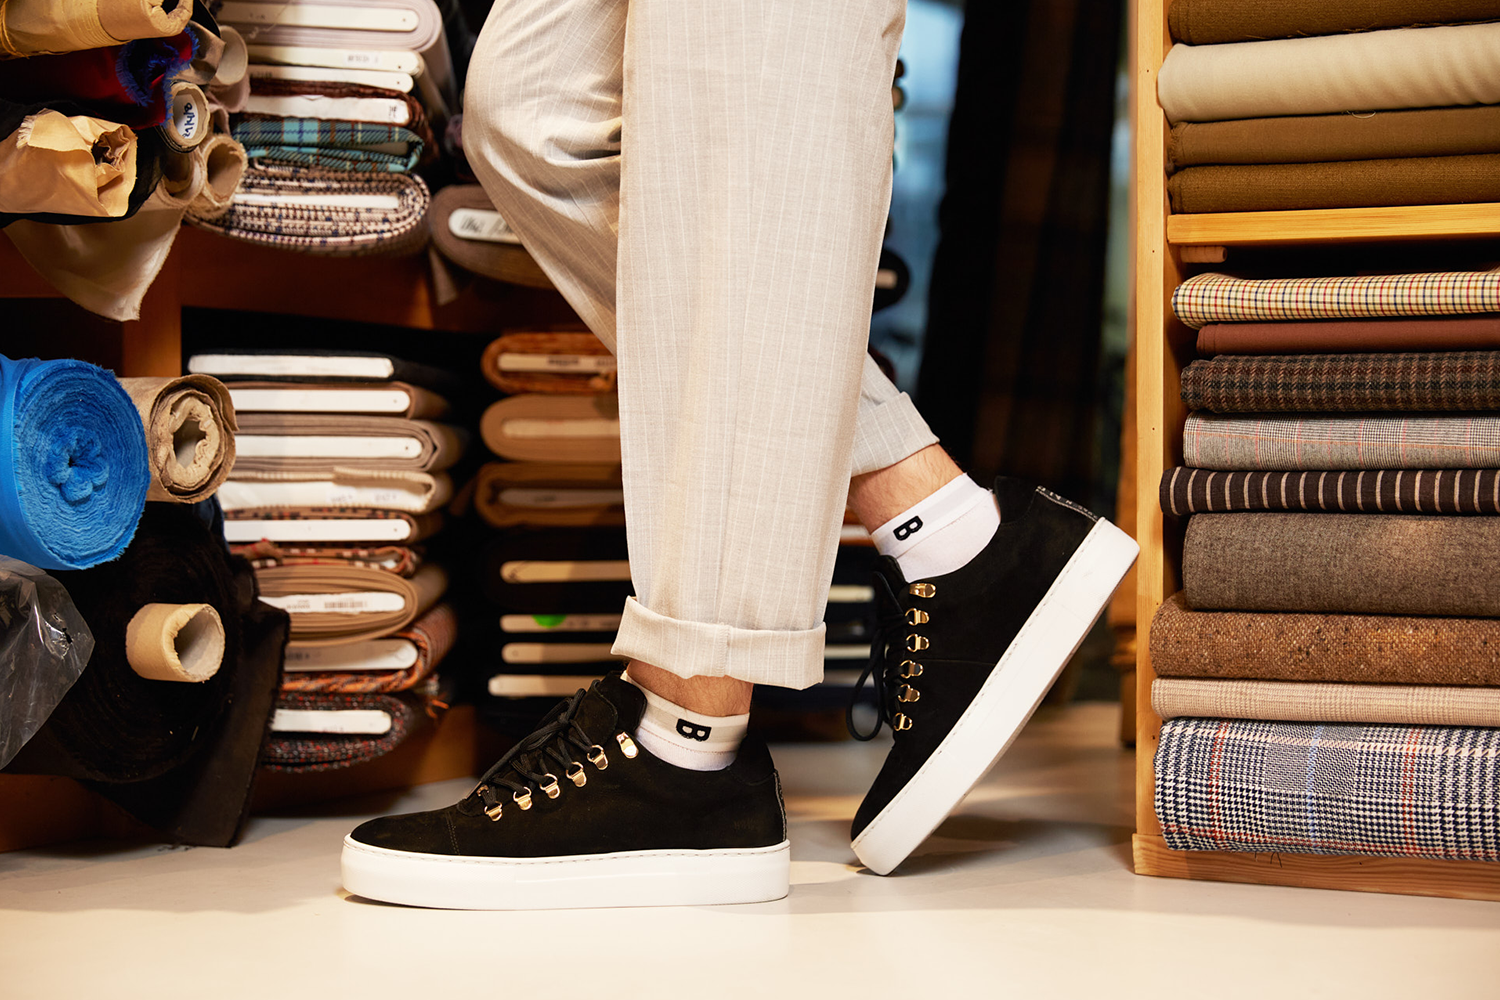 Plan-B Origin sokken gedragen bij zwarte nette sneaker in kleermakerszaak